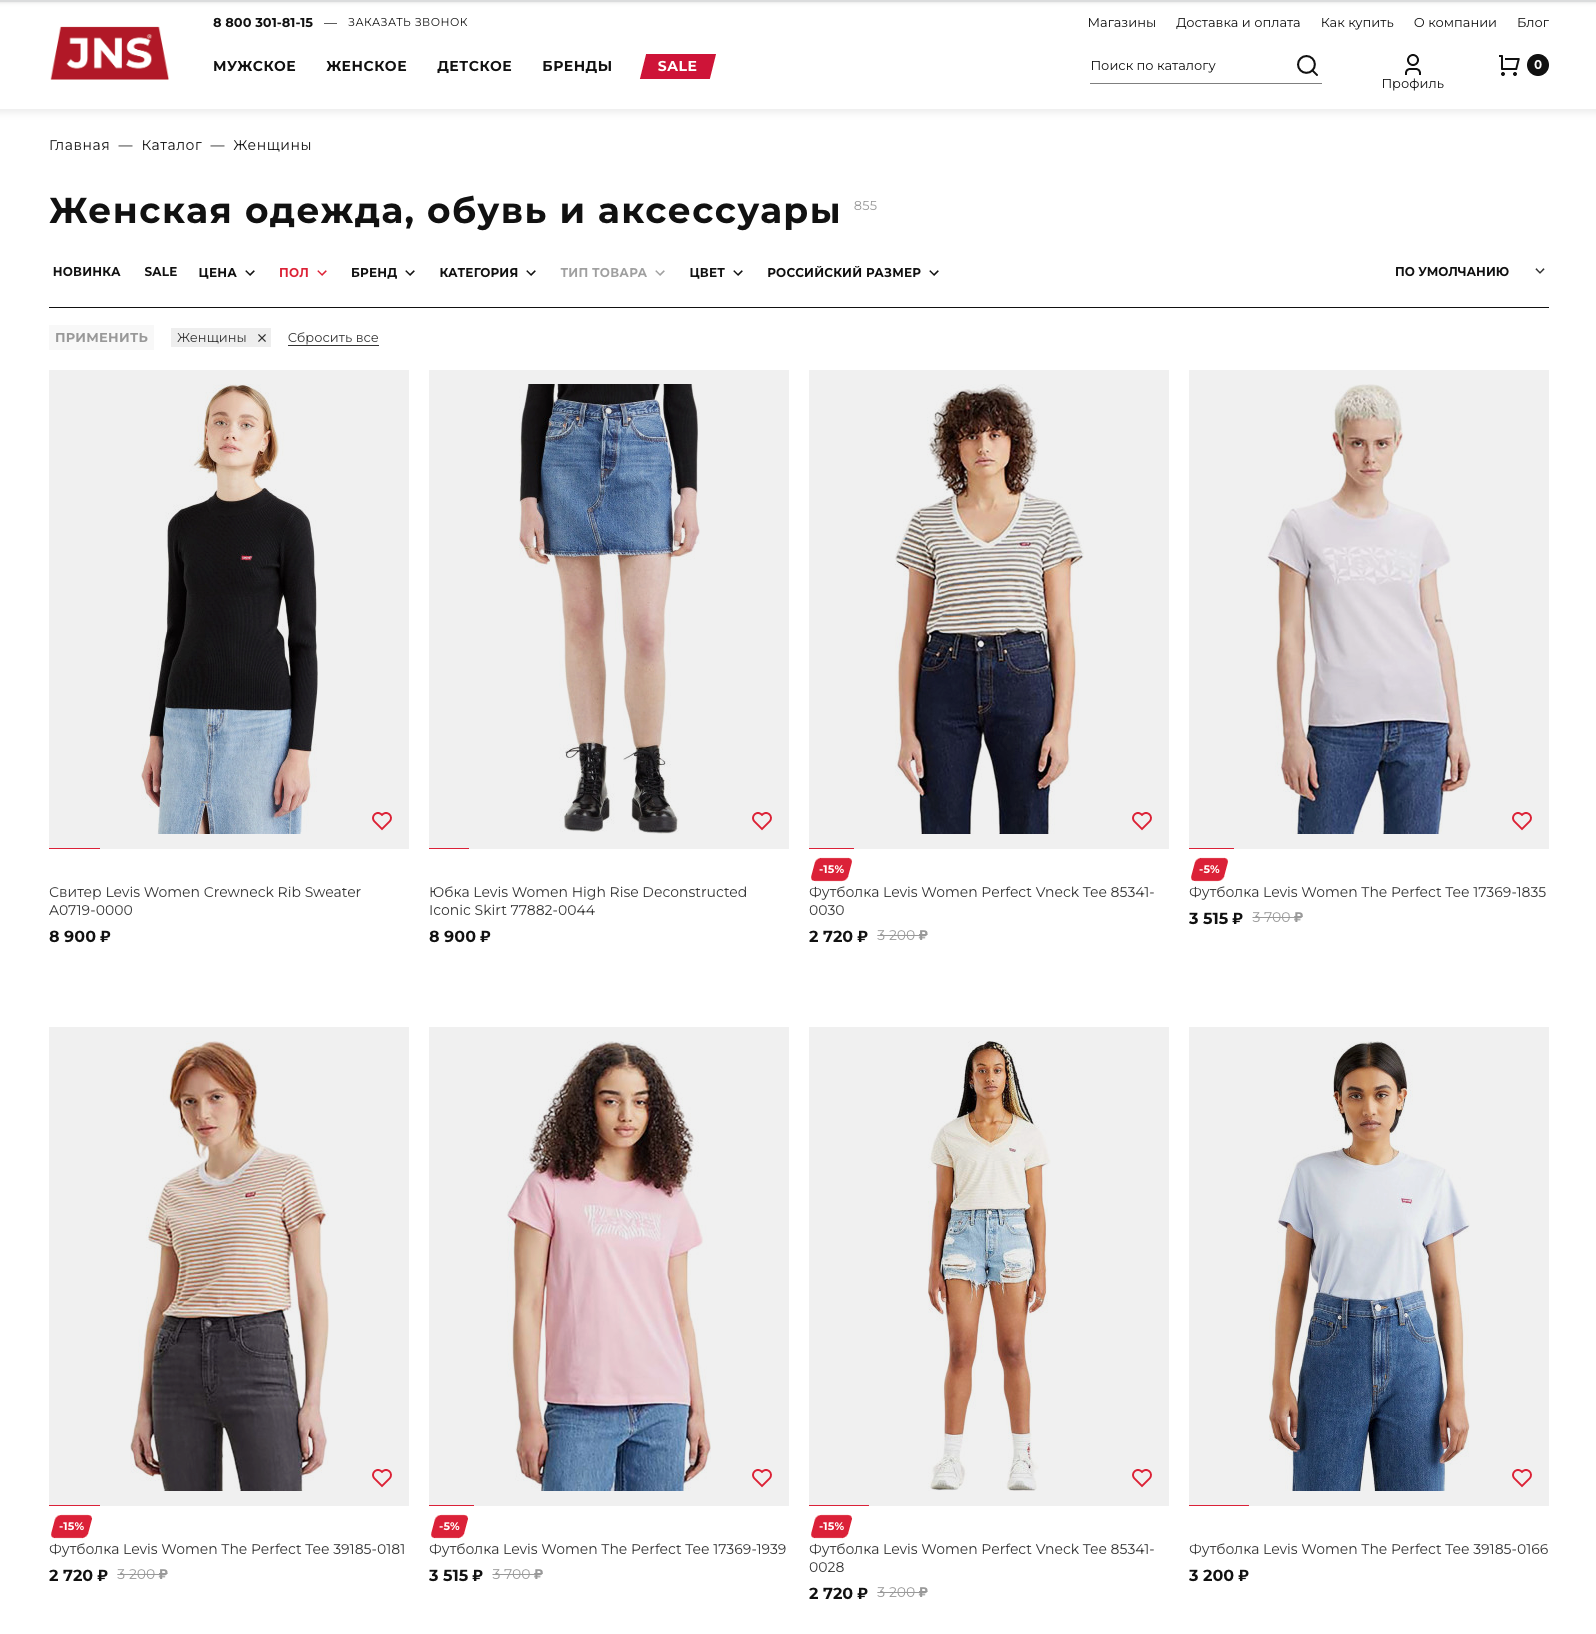 jns – сеть мультибрендовых магазинов одежды и обуви мировых брендов